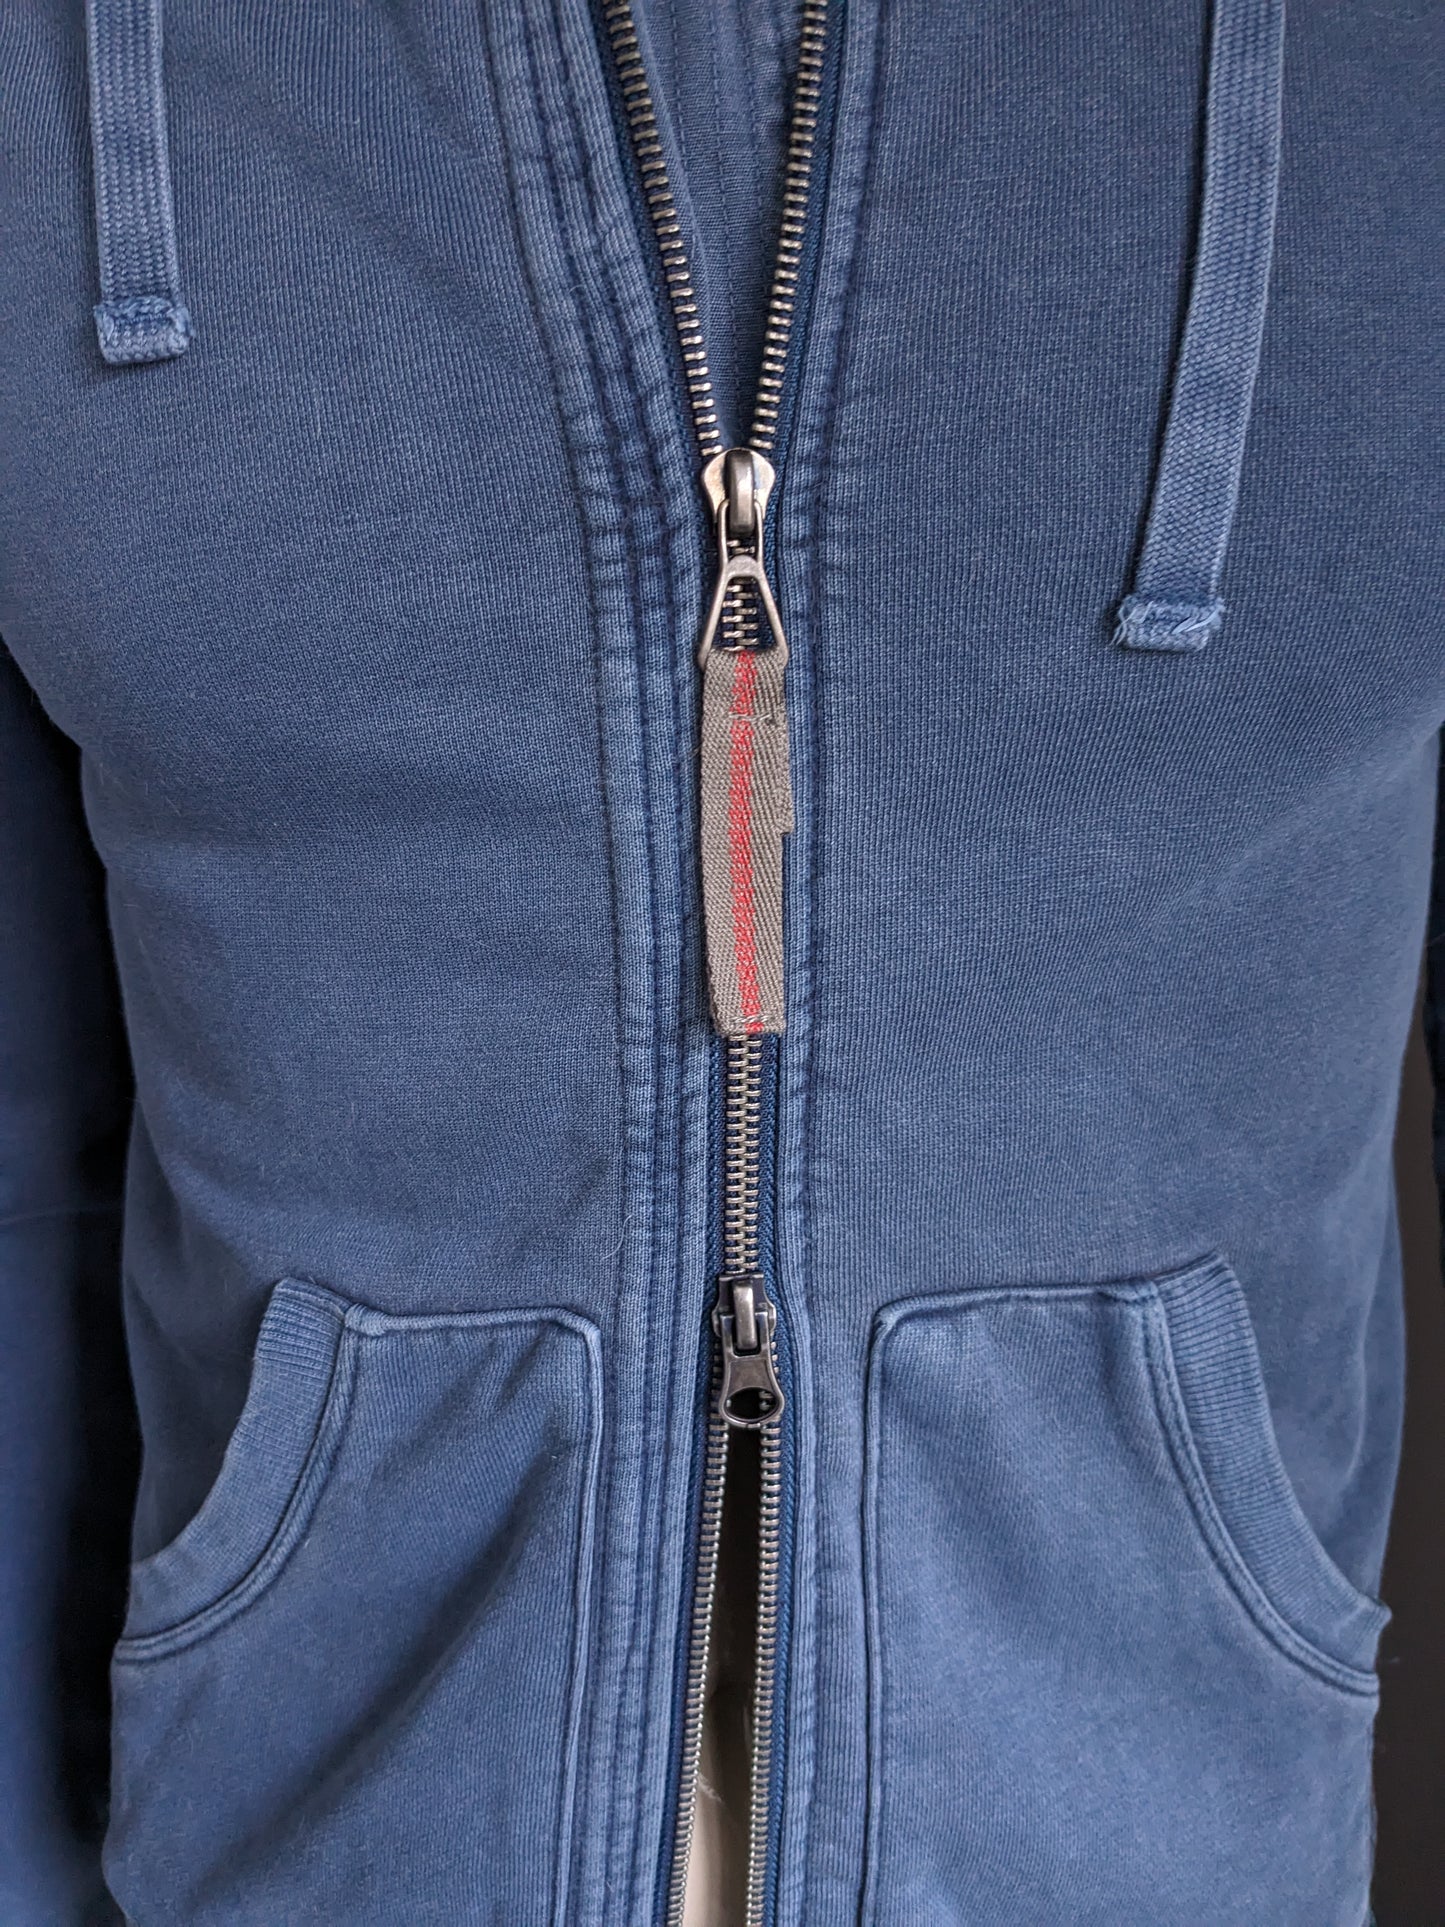 Armani Jeans Cardigan con cappuccio. Blu. Taglia M / S.